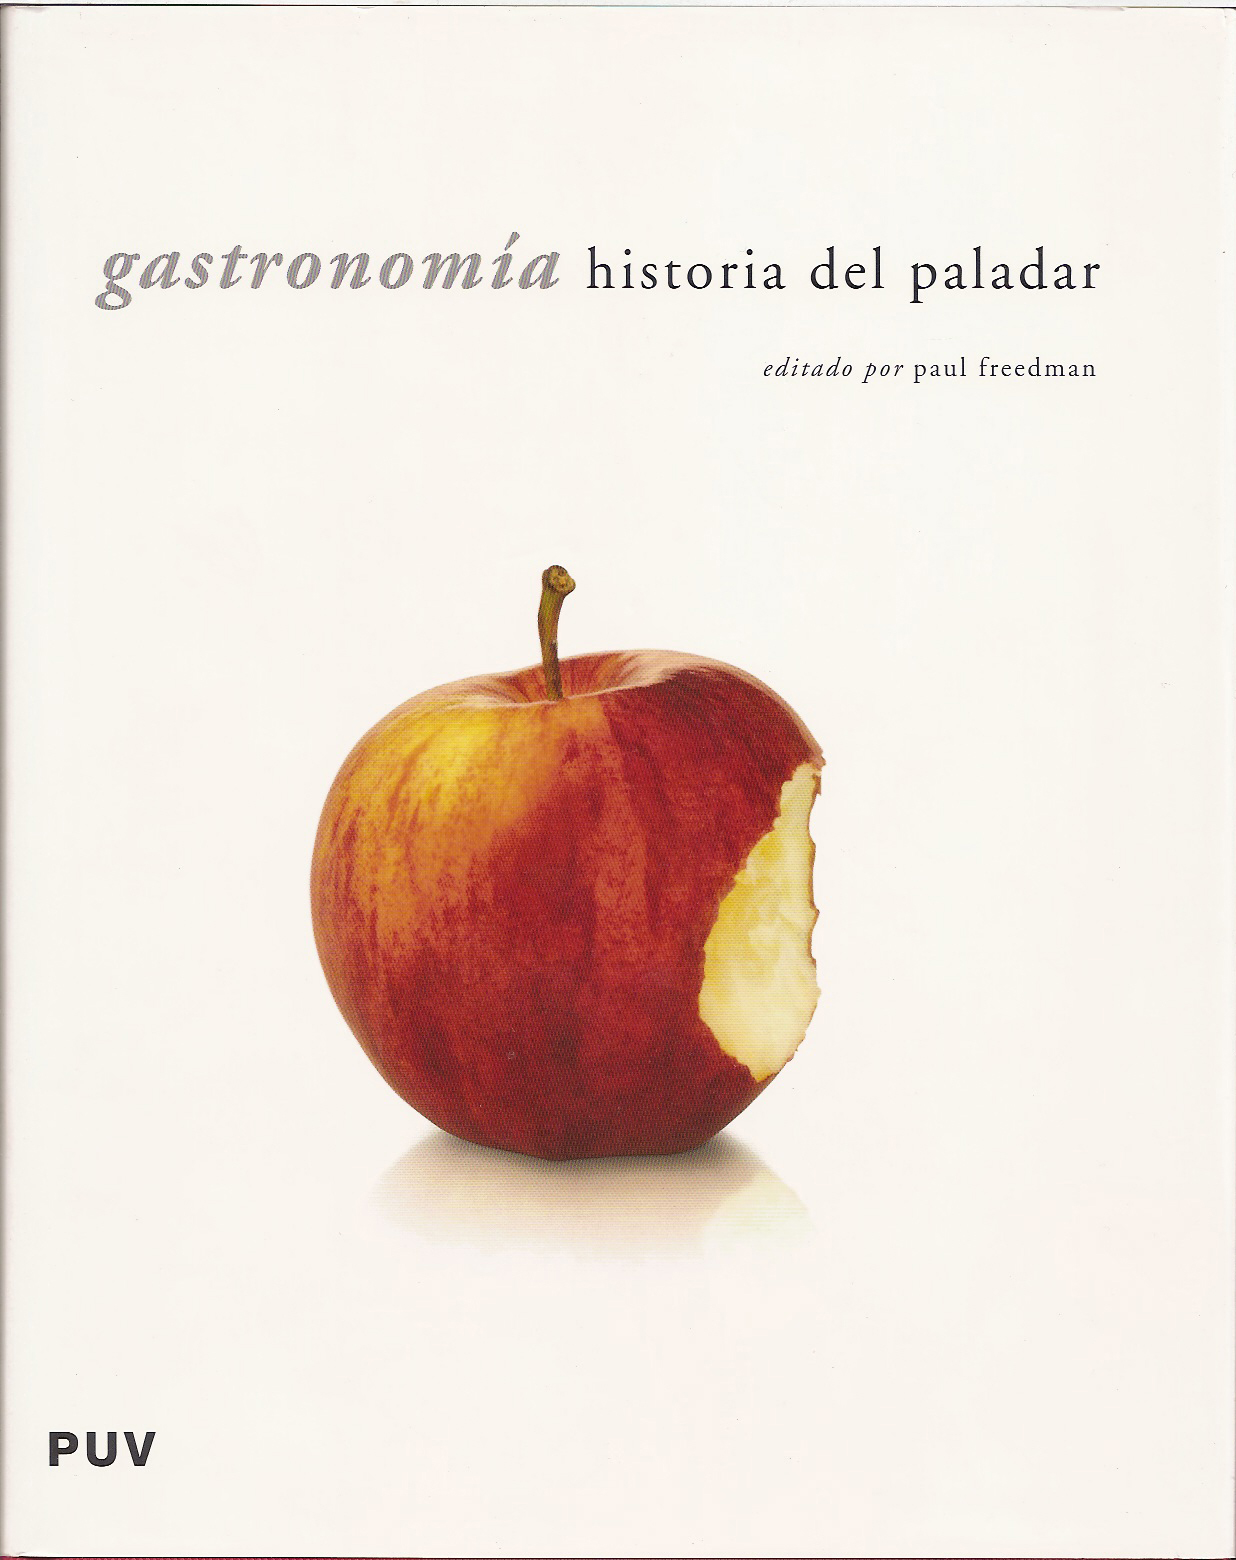 GASTRONOMIA: Historia del paladar- Varios autores-Universidad de Valencia